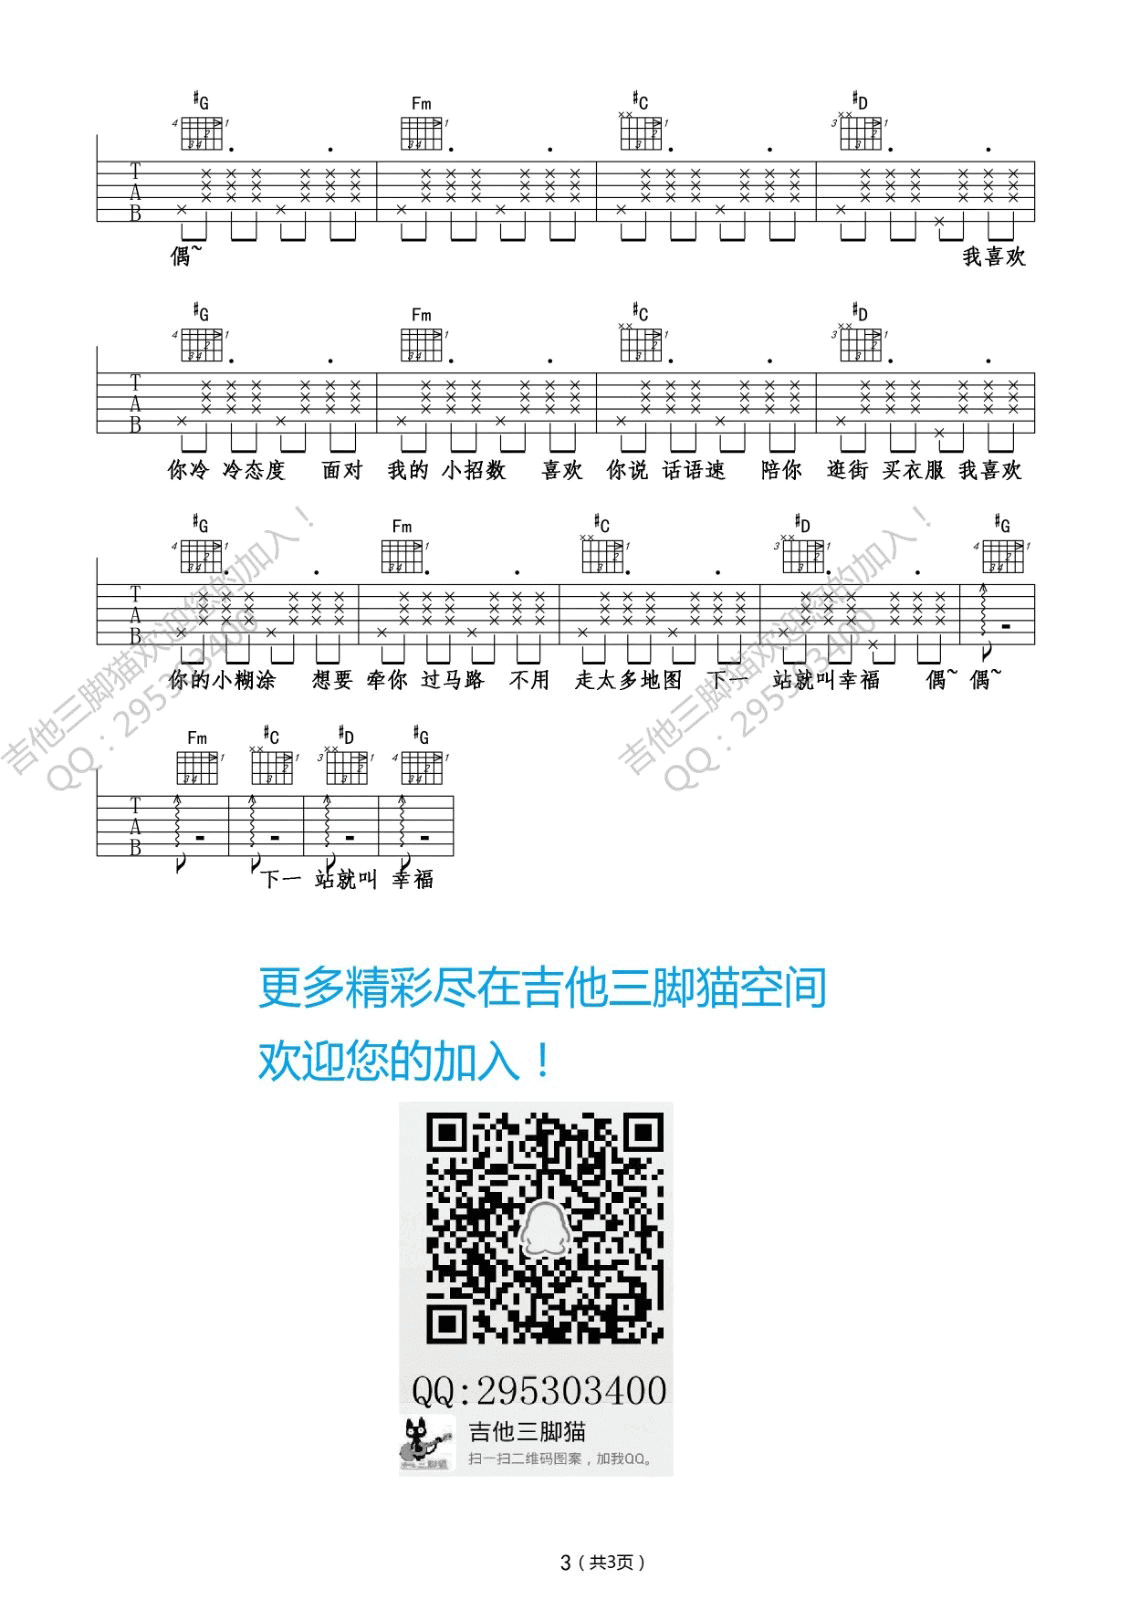 海绵宝宝 - Ending Theme Acoustic吉他谱(gtp谱)_动漫游戏(ACG)